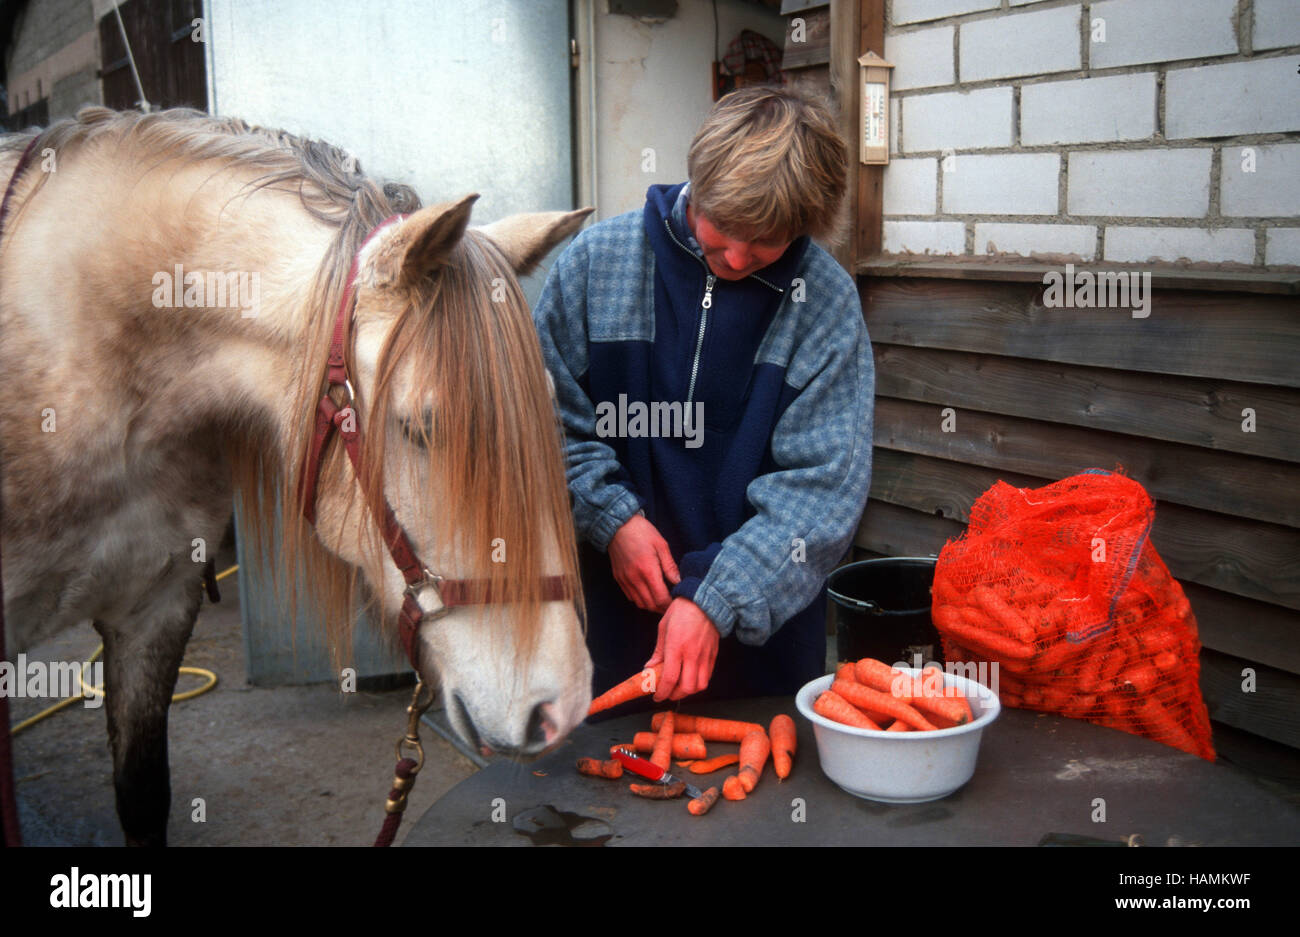 Pferdepfleger Bei der Arbeit Stockfotografie - Alamy